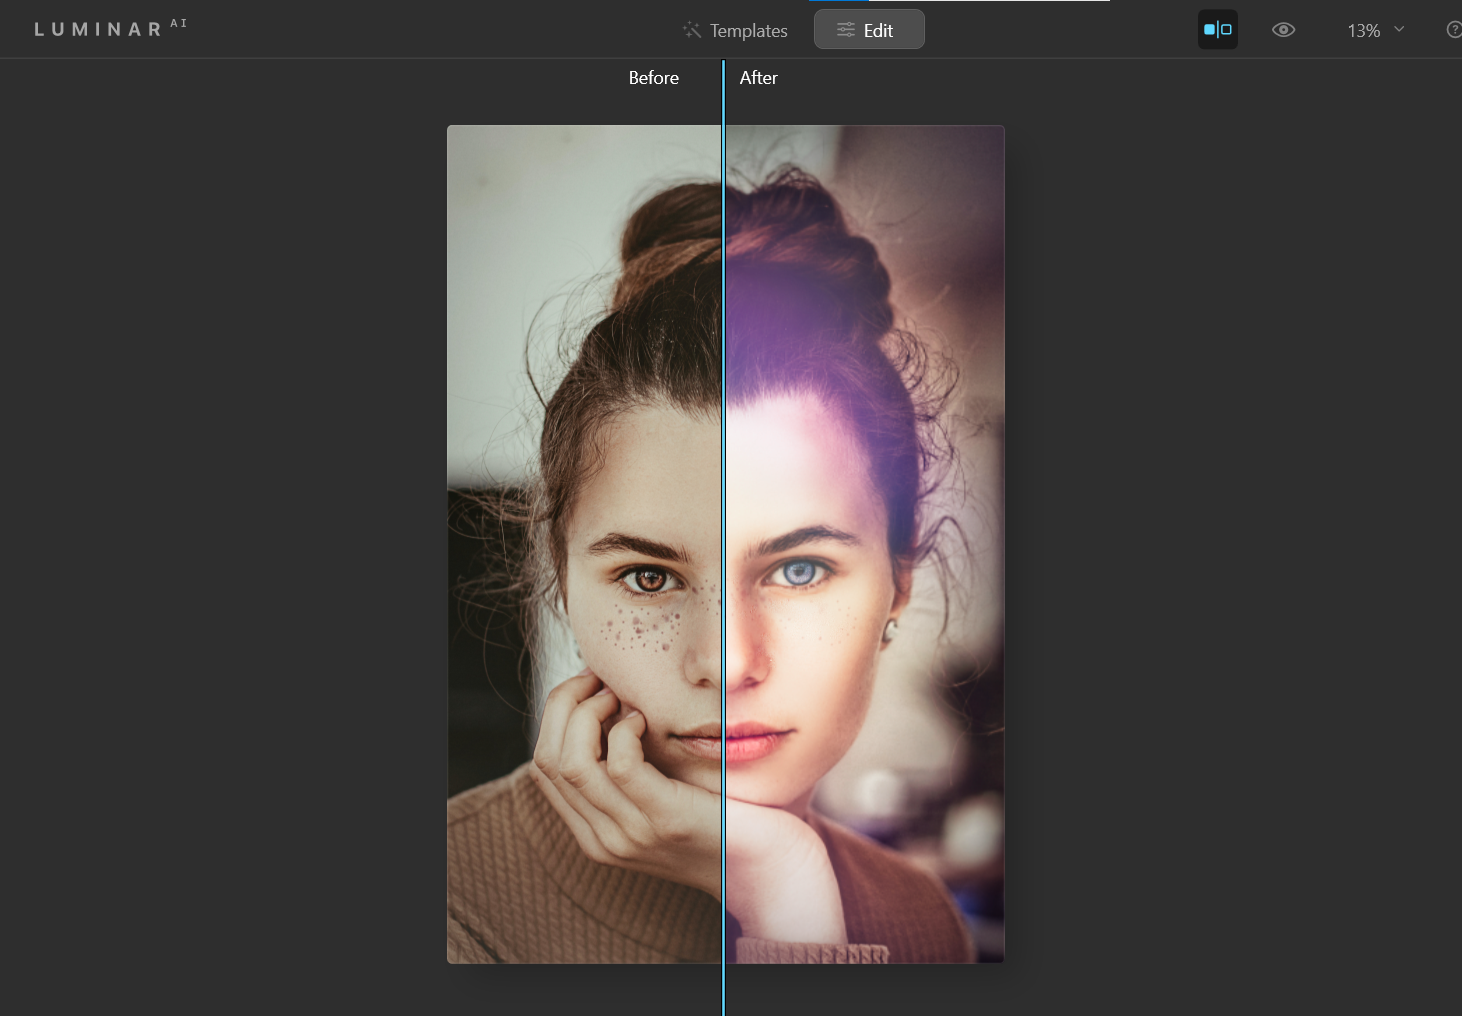 Glow ex. before and after - Come utilizzare Luminar AI con Photoshop per ritratti migliori